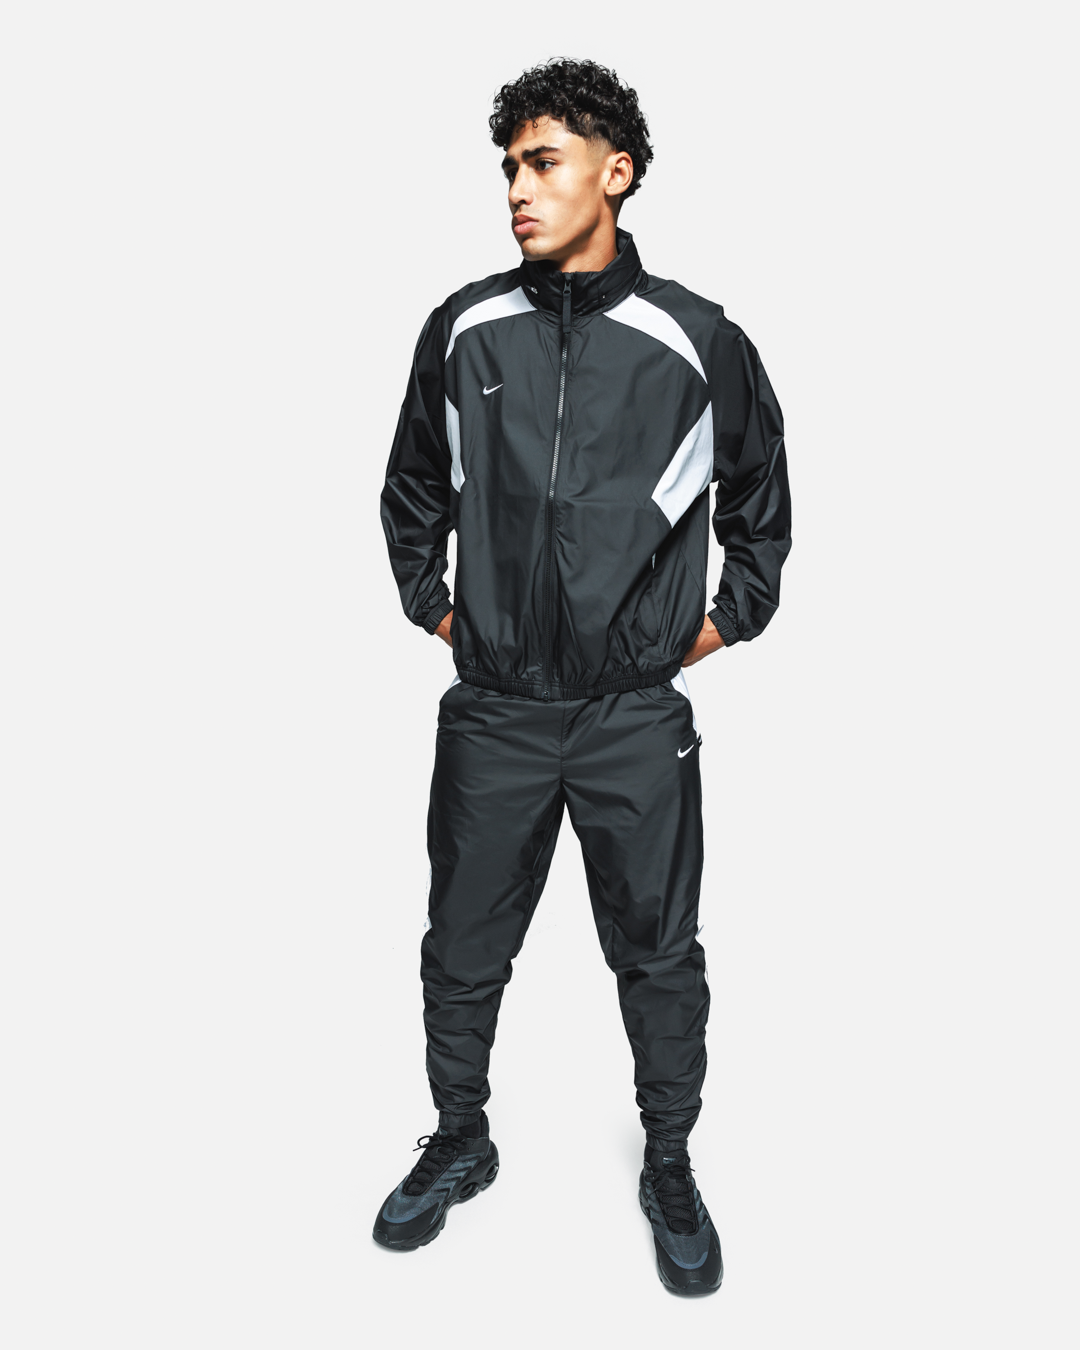 Veste de survêtement Nike FC Repel - Noir/Blanc